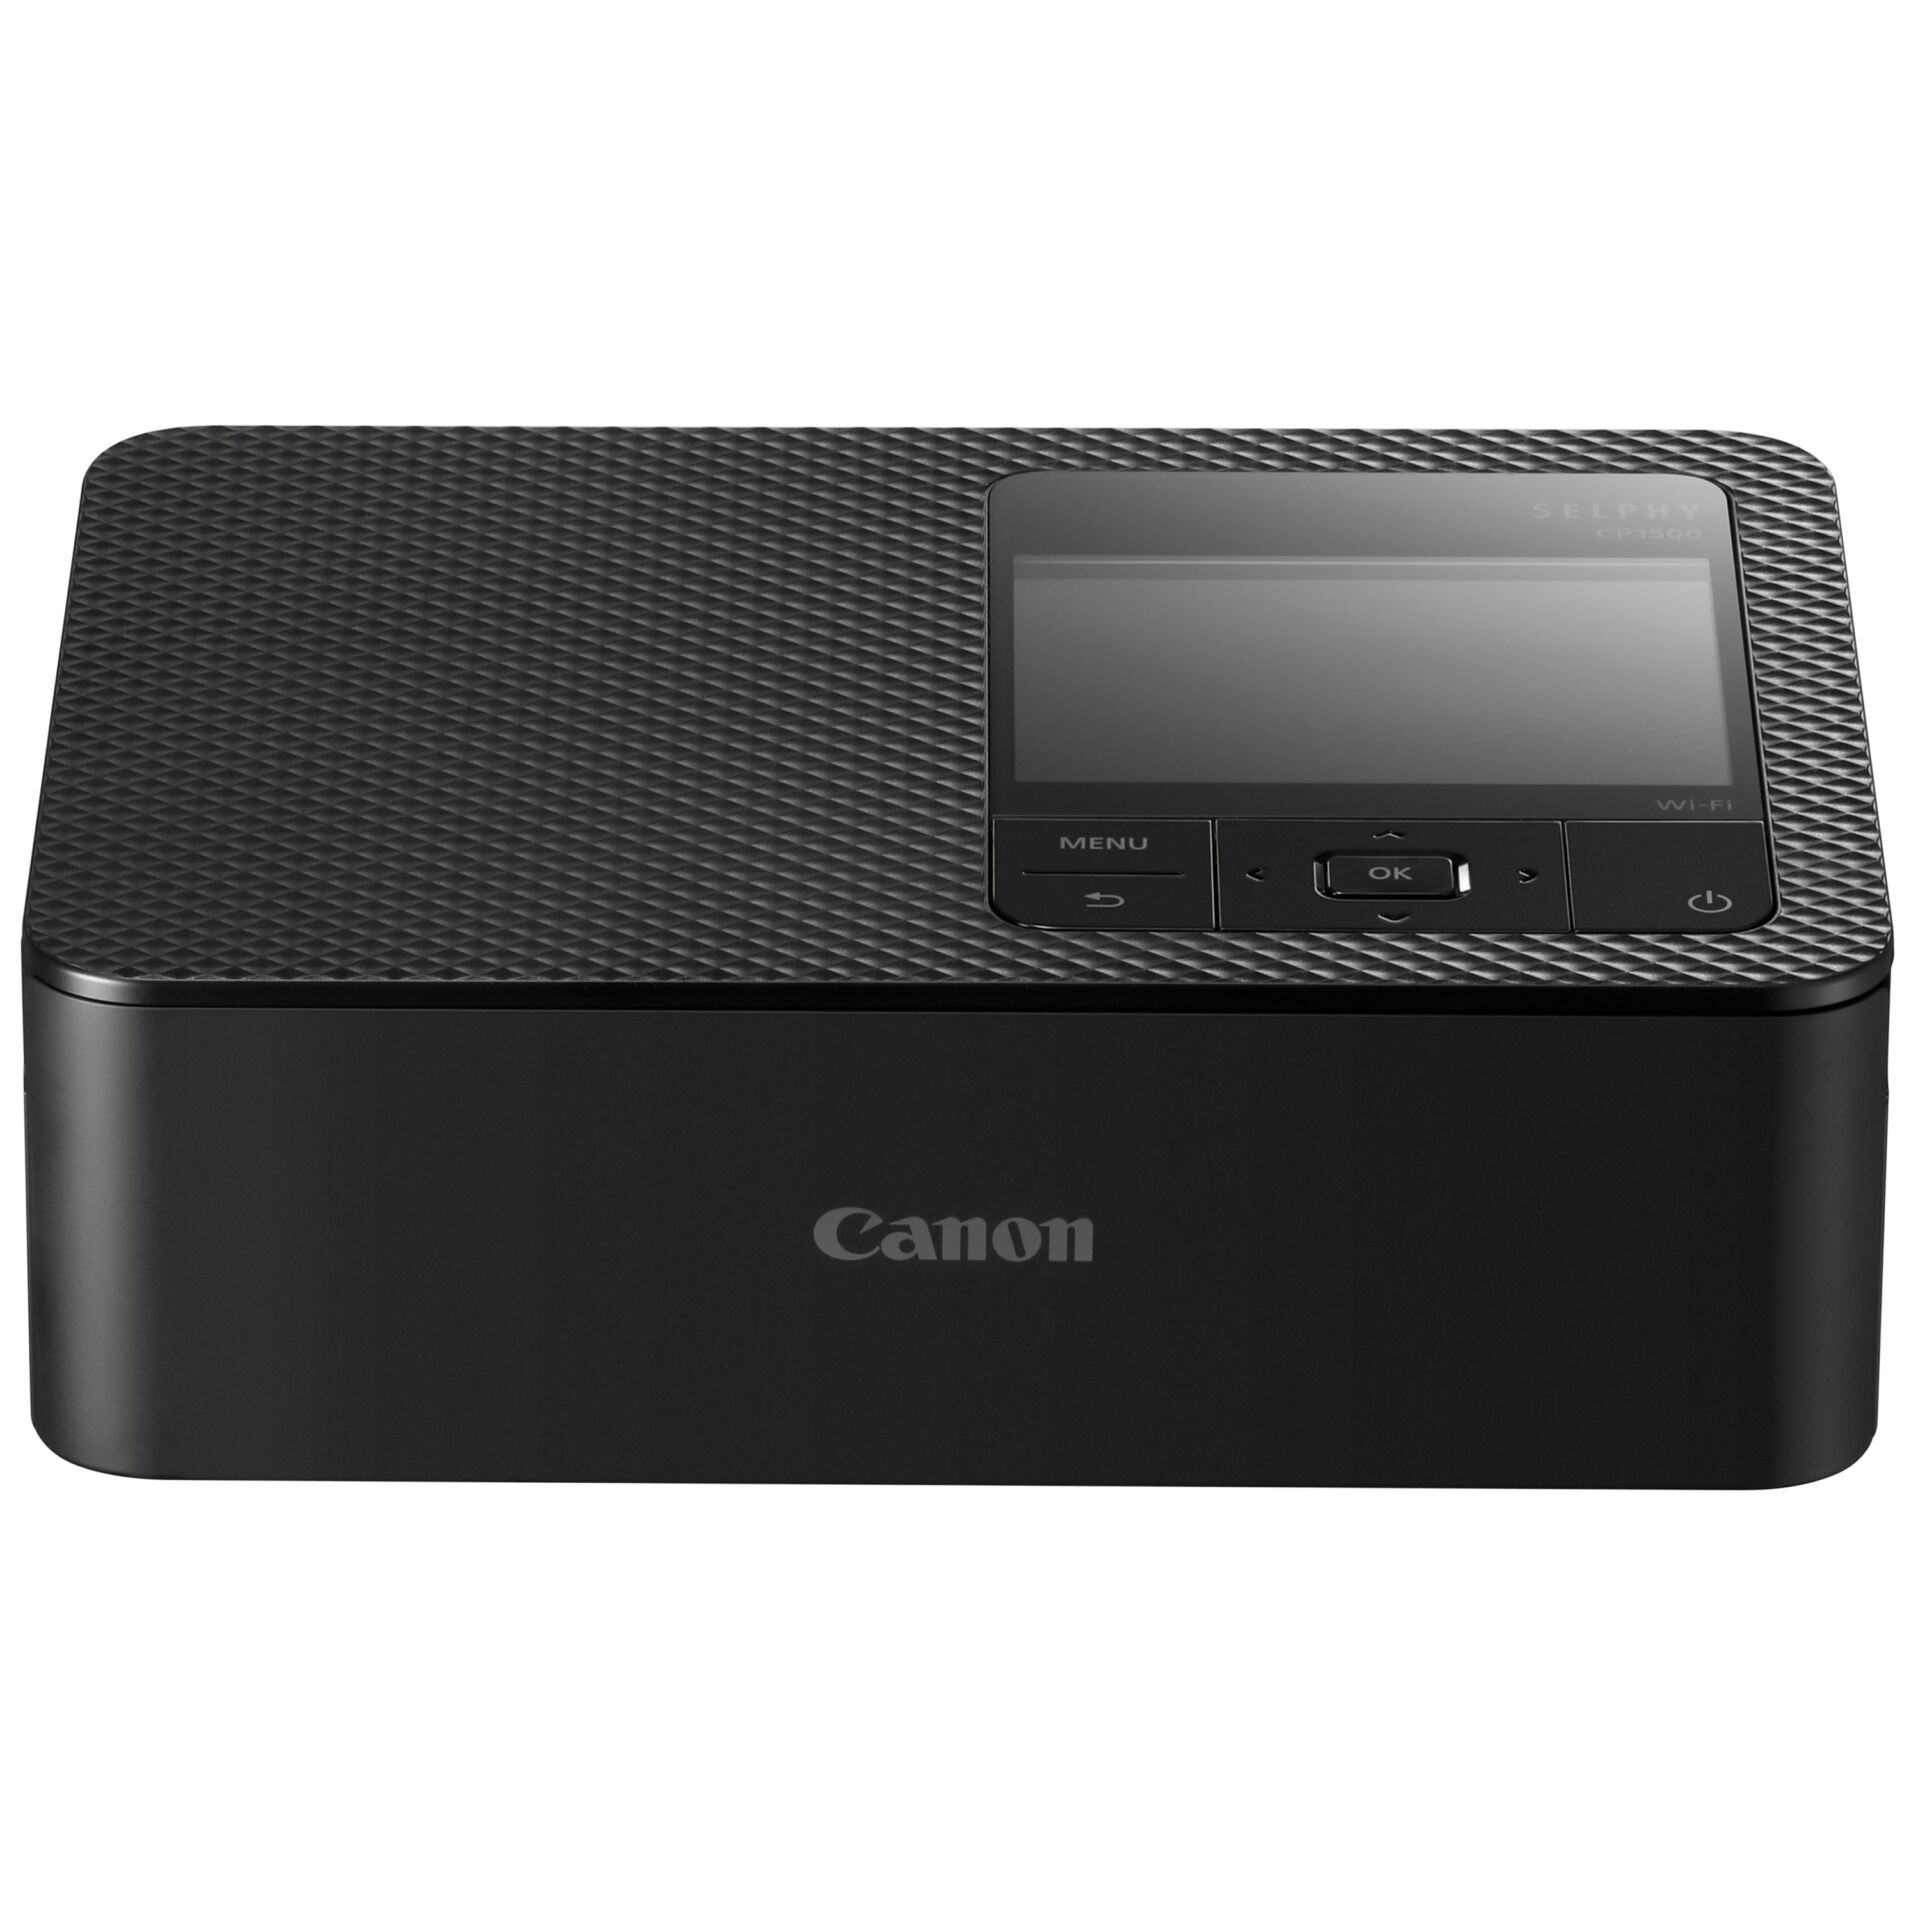 Canon SELPHY CP1500 photo printer Dye-sublimation 300 x 300 DPI 4 x 6 (10x15 cm) Wi-Fi